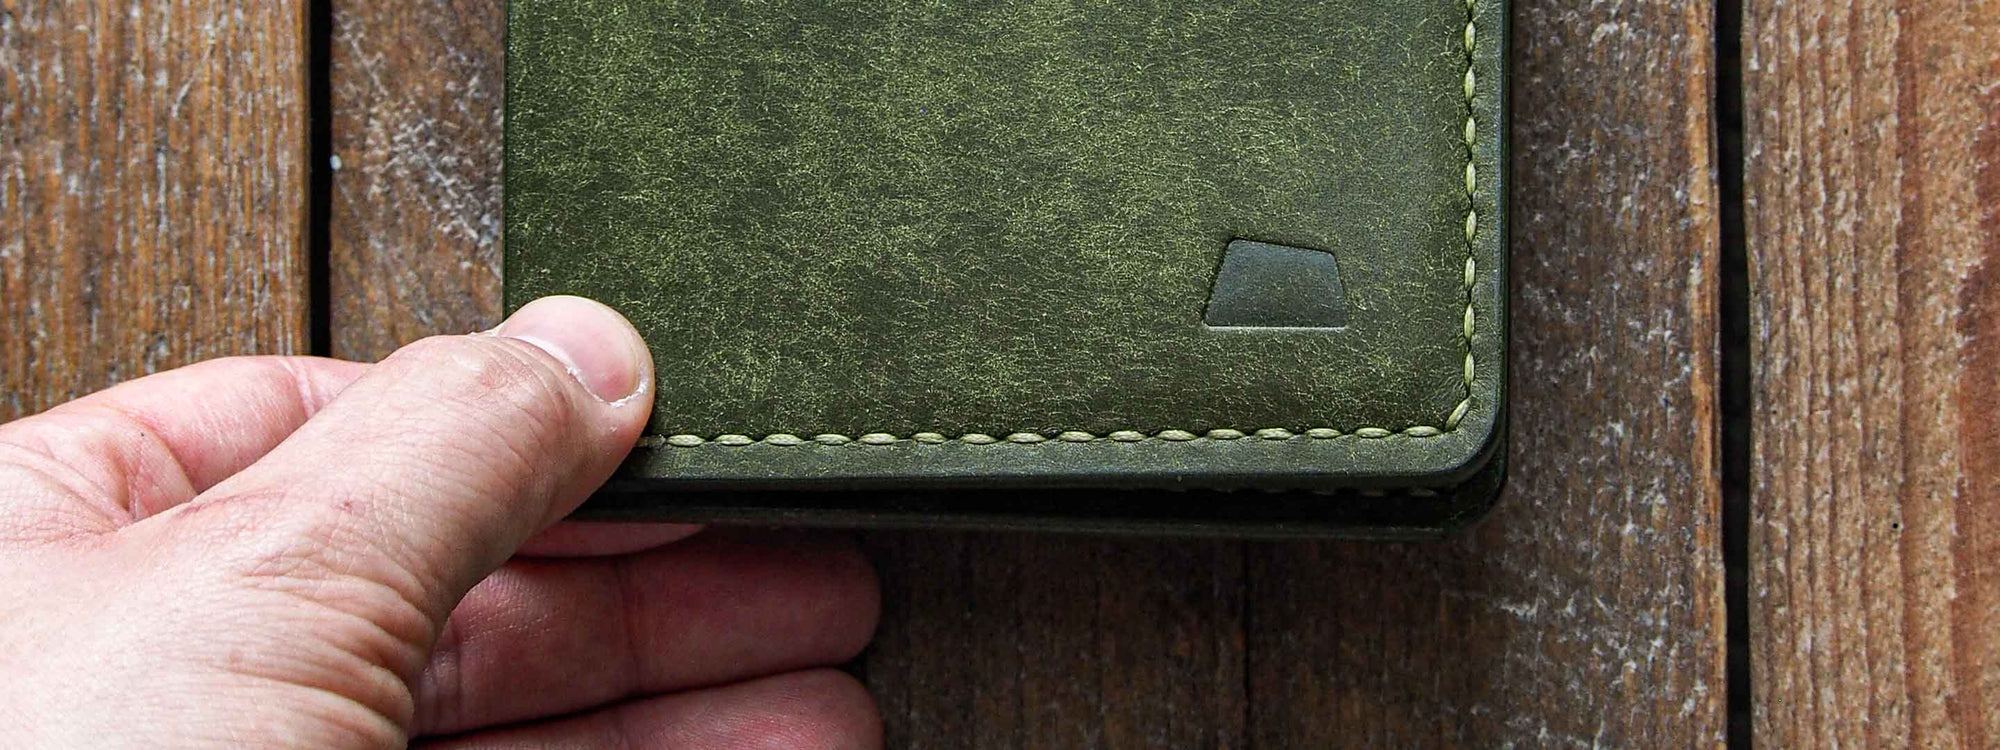 handmade leather wallet for men